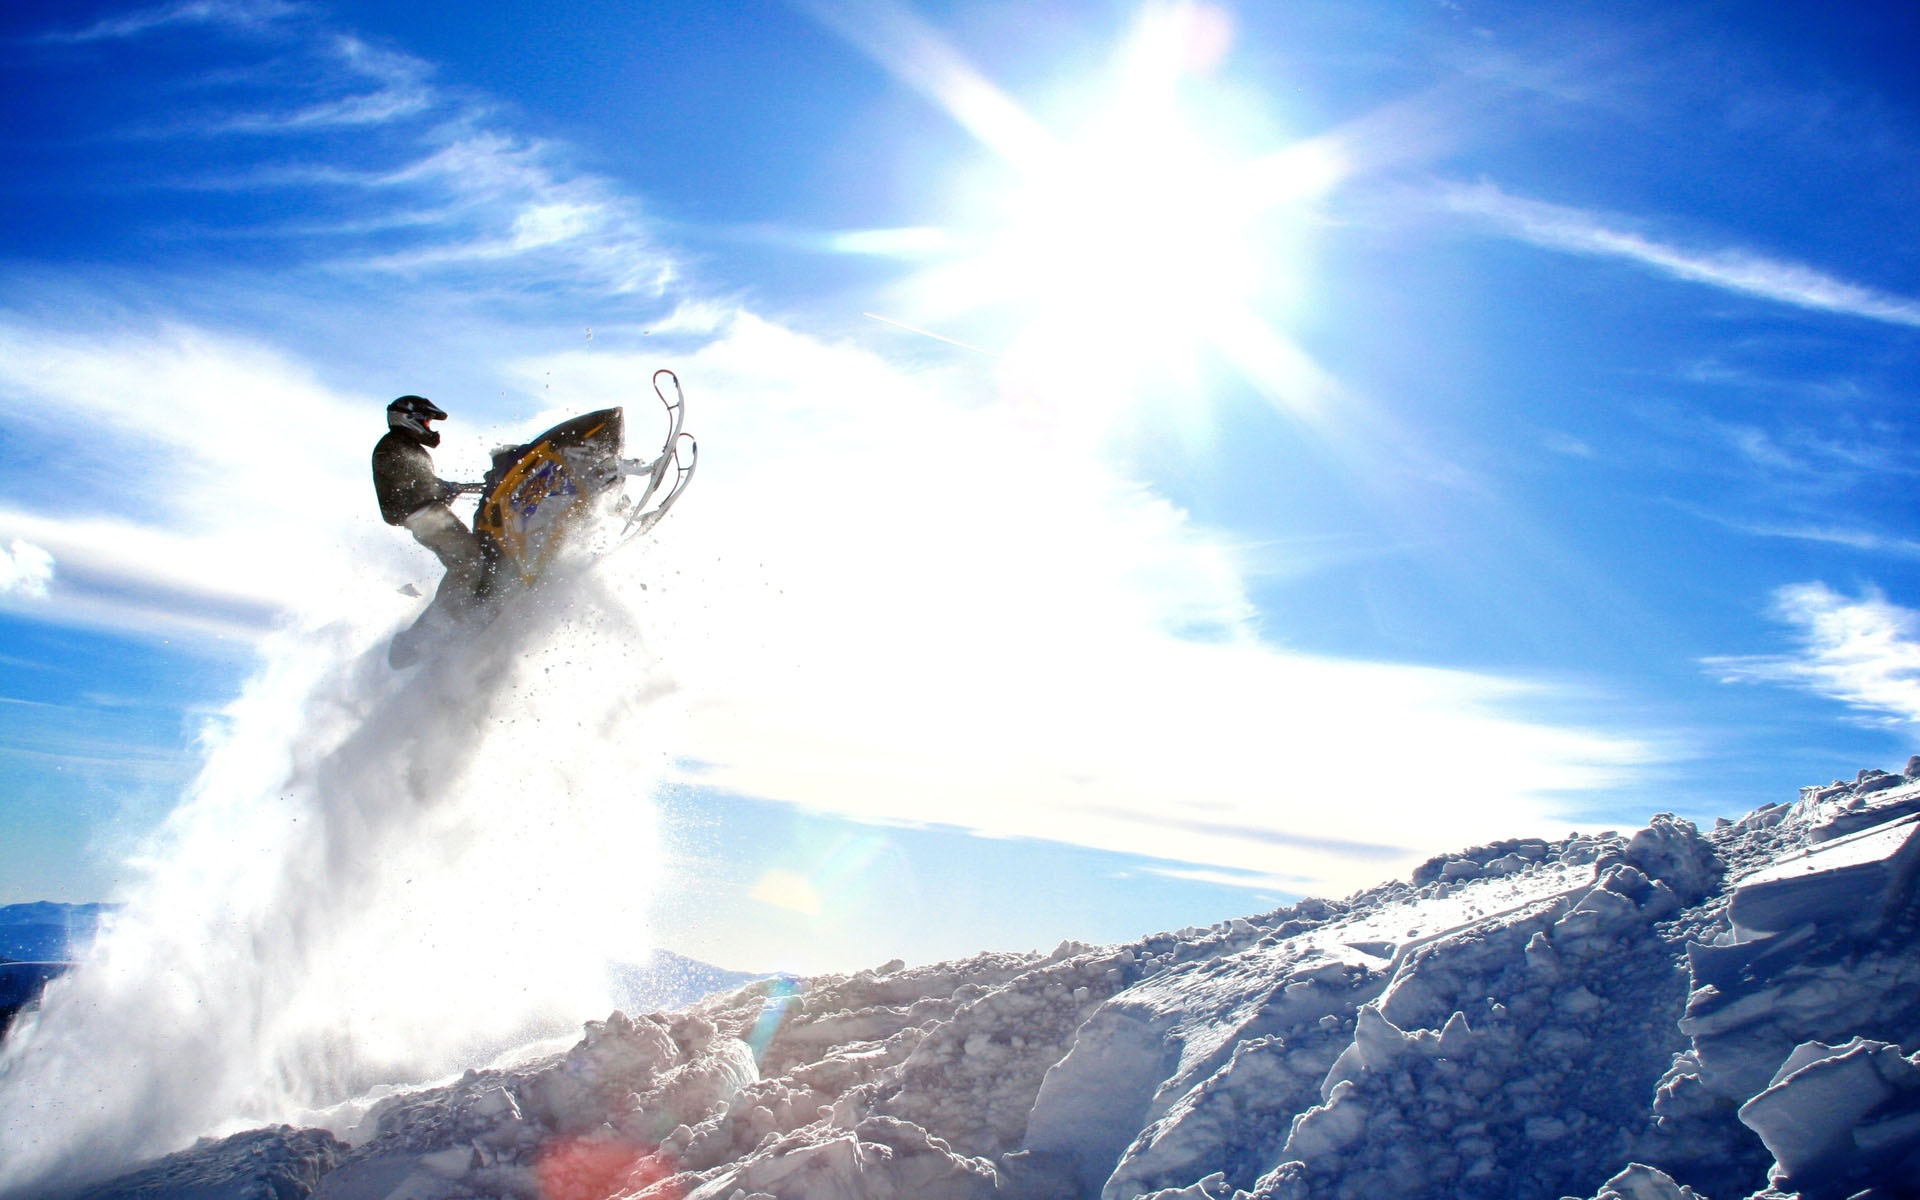 schneemobil tapete,schnee,extremsport,himmel,snowboard,winter